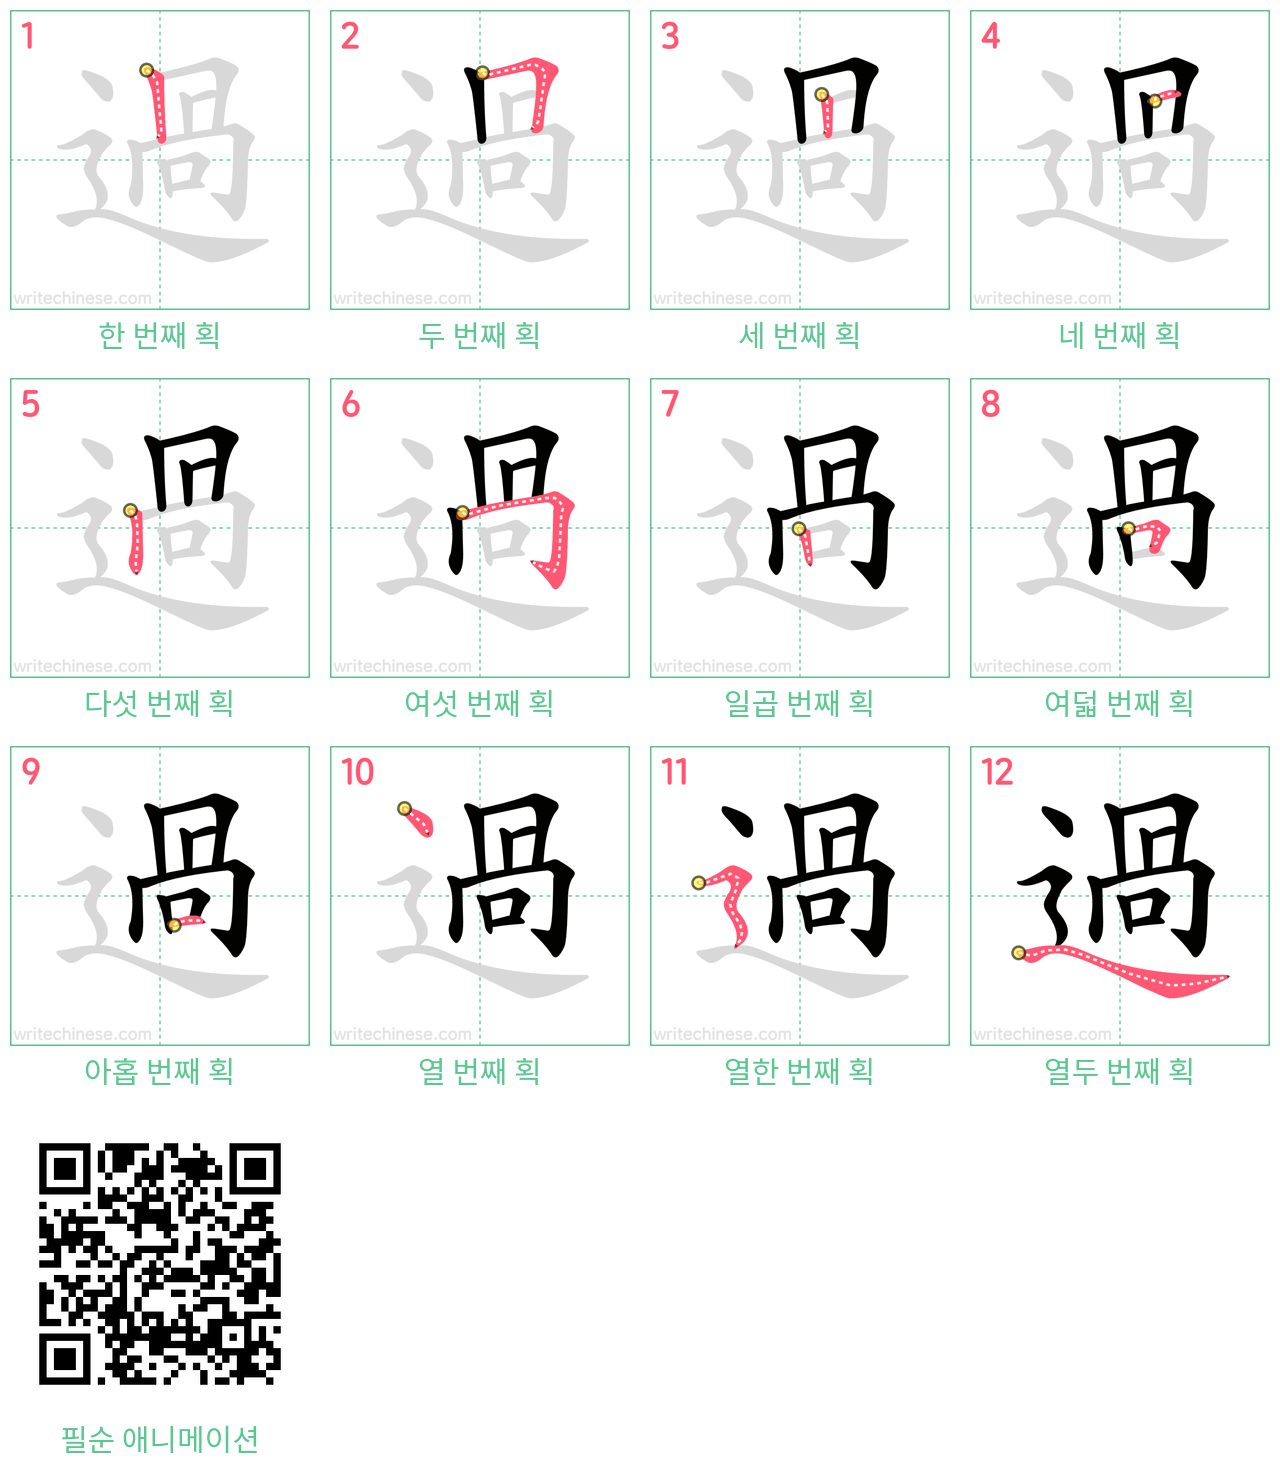 過 step-by-step stroke order diagrams